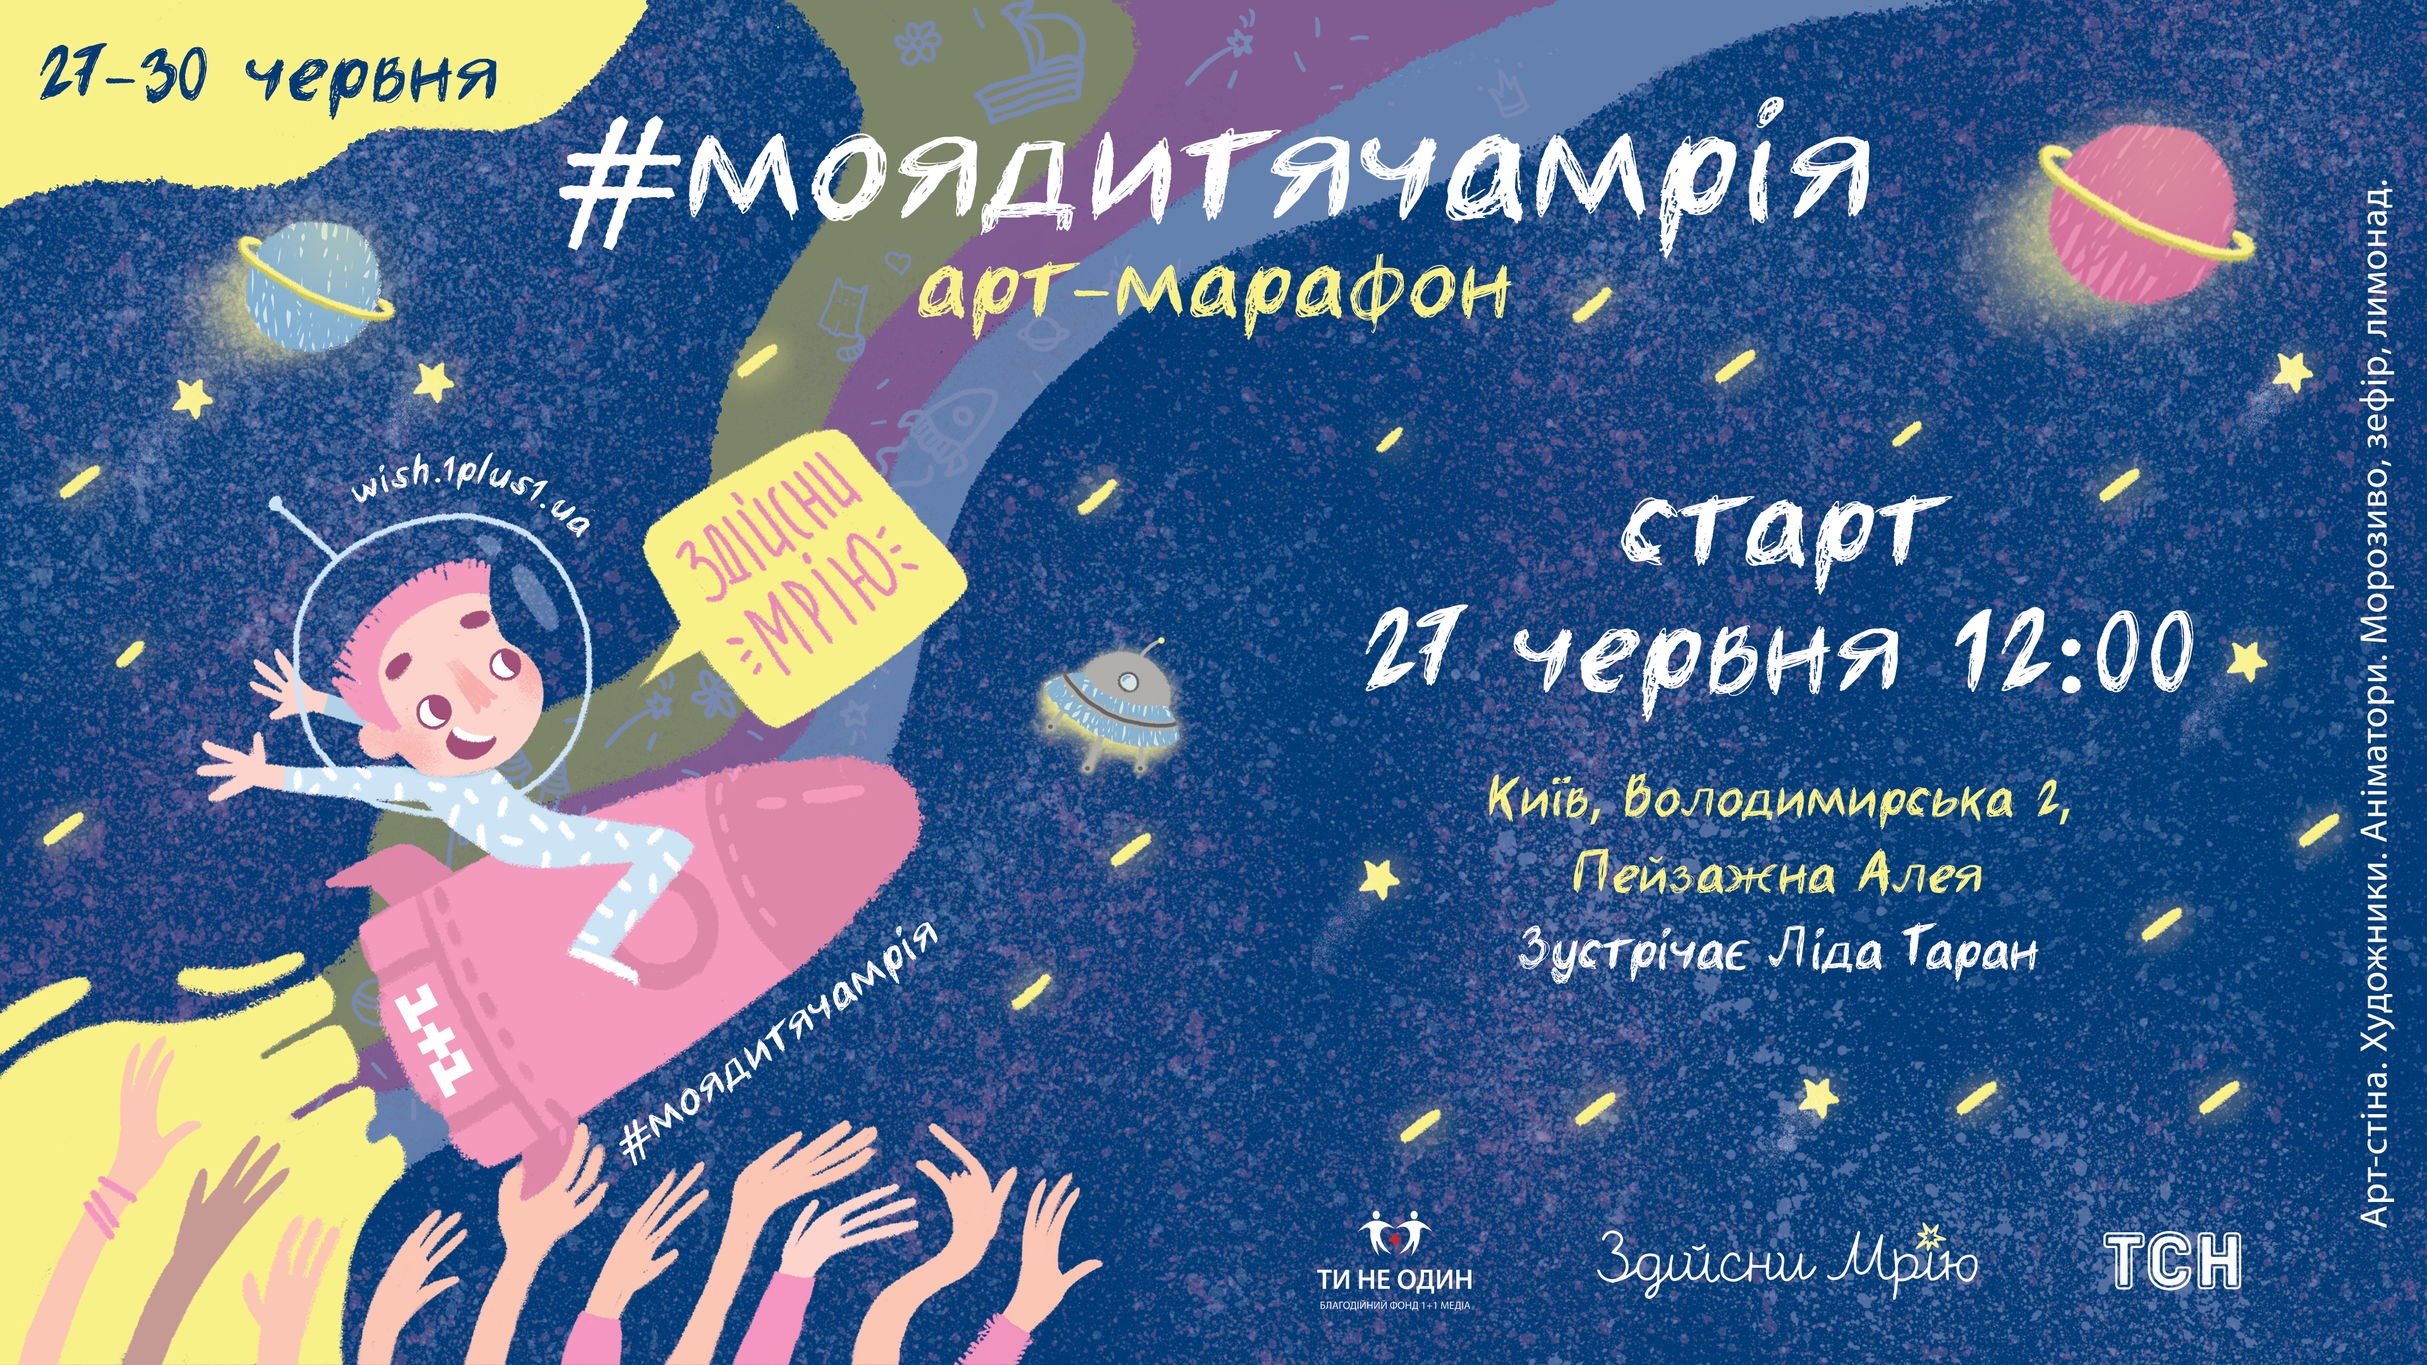 v-kieve-startuet-art-marafon-moyadityachamrya-3